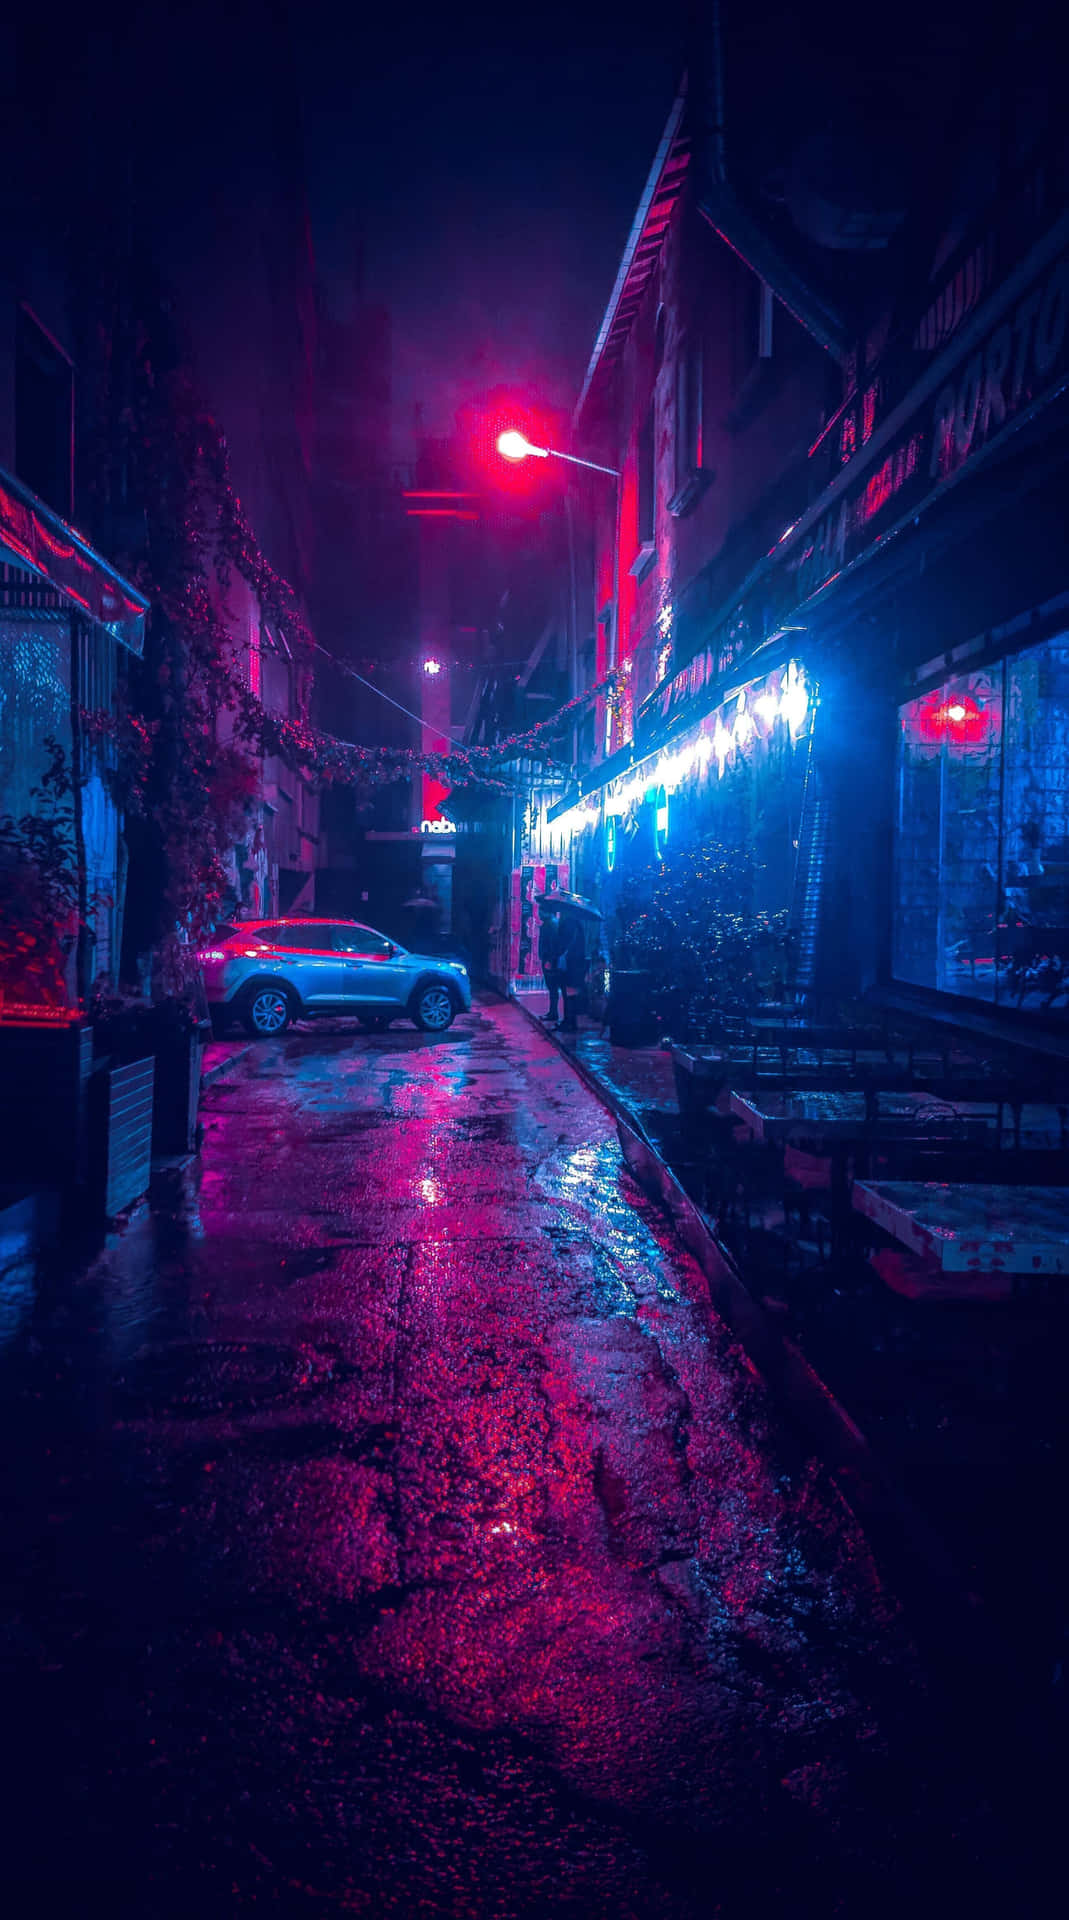 "Explore the neon-lit cyberpunk cityscape!"